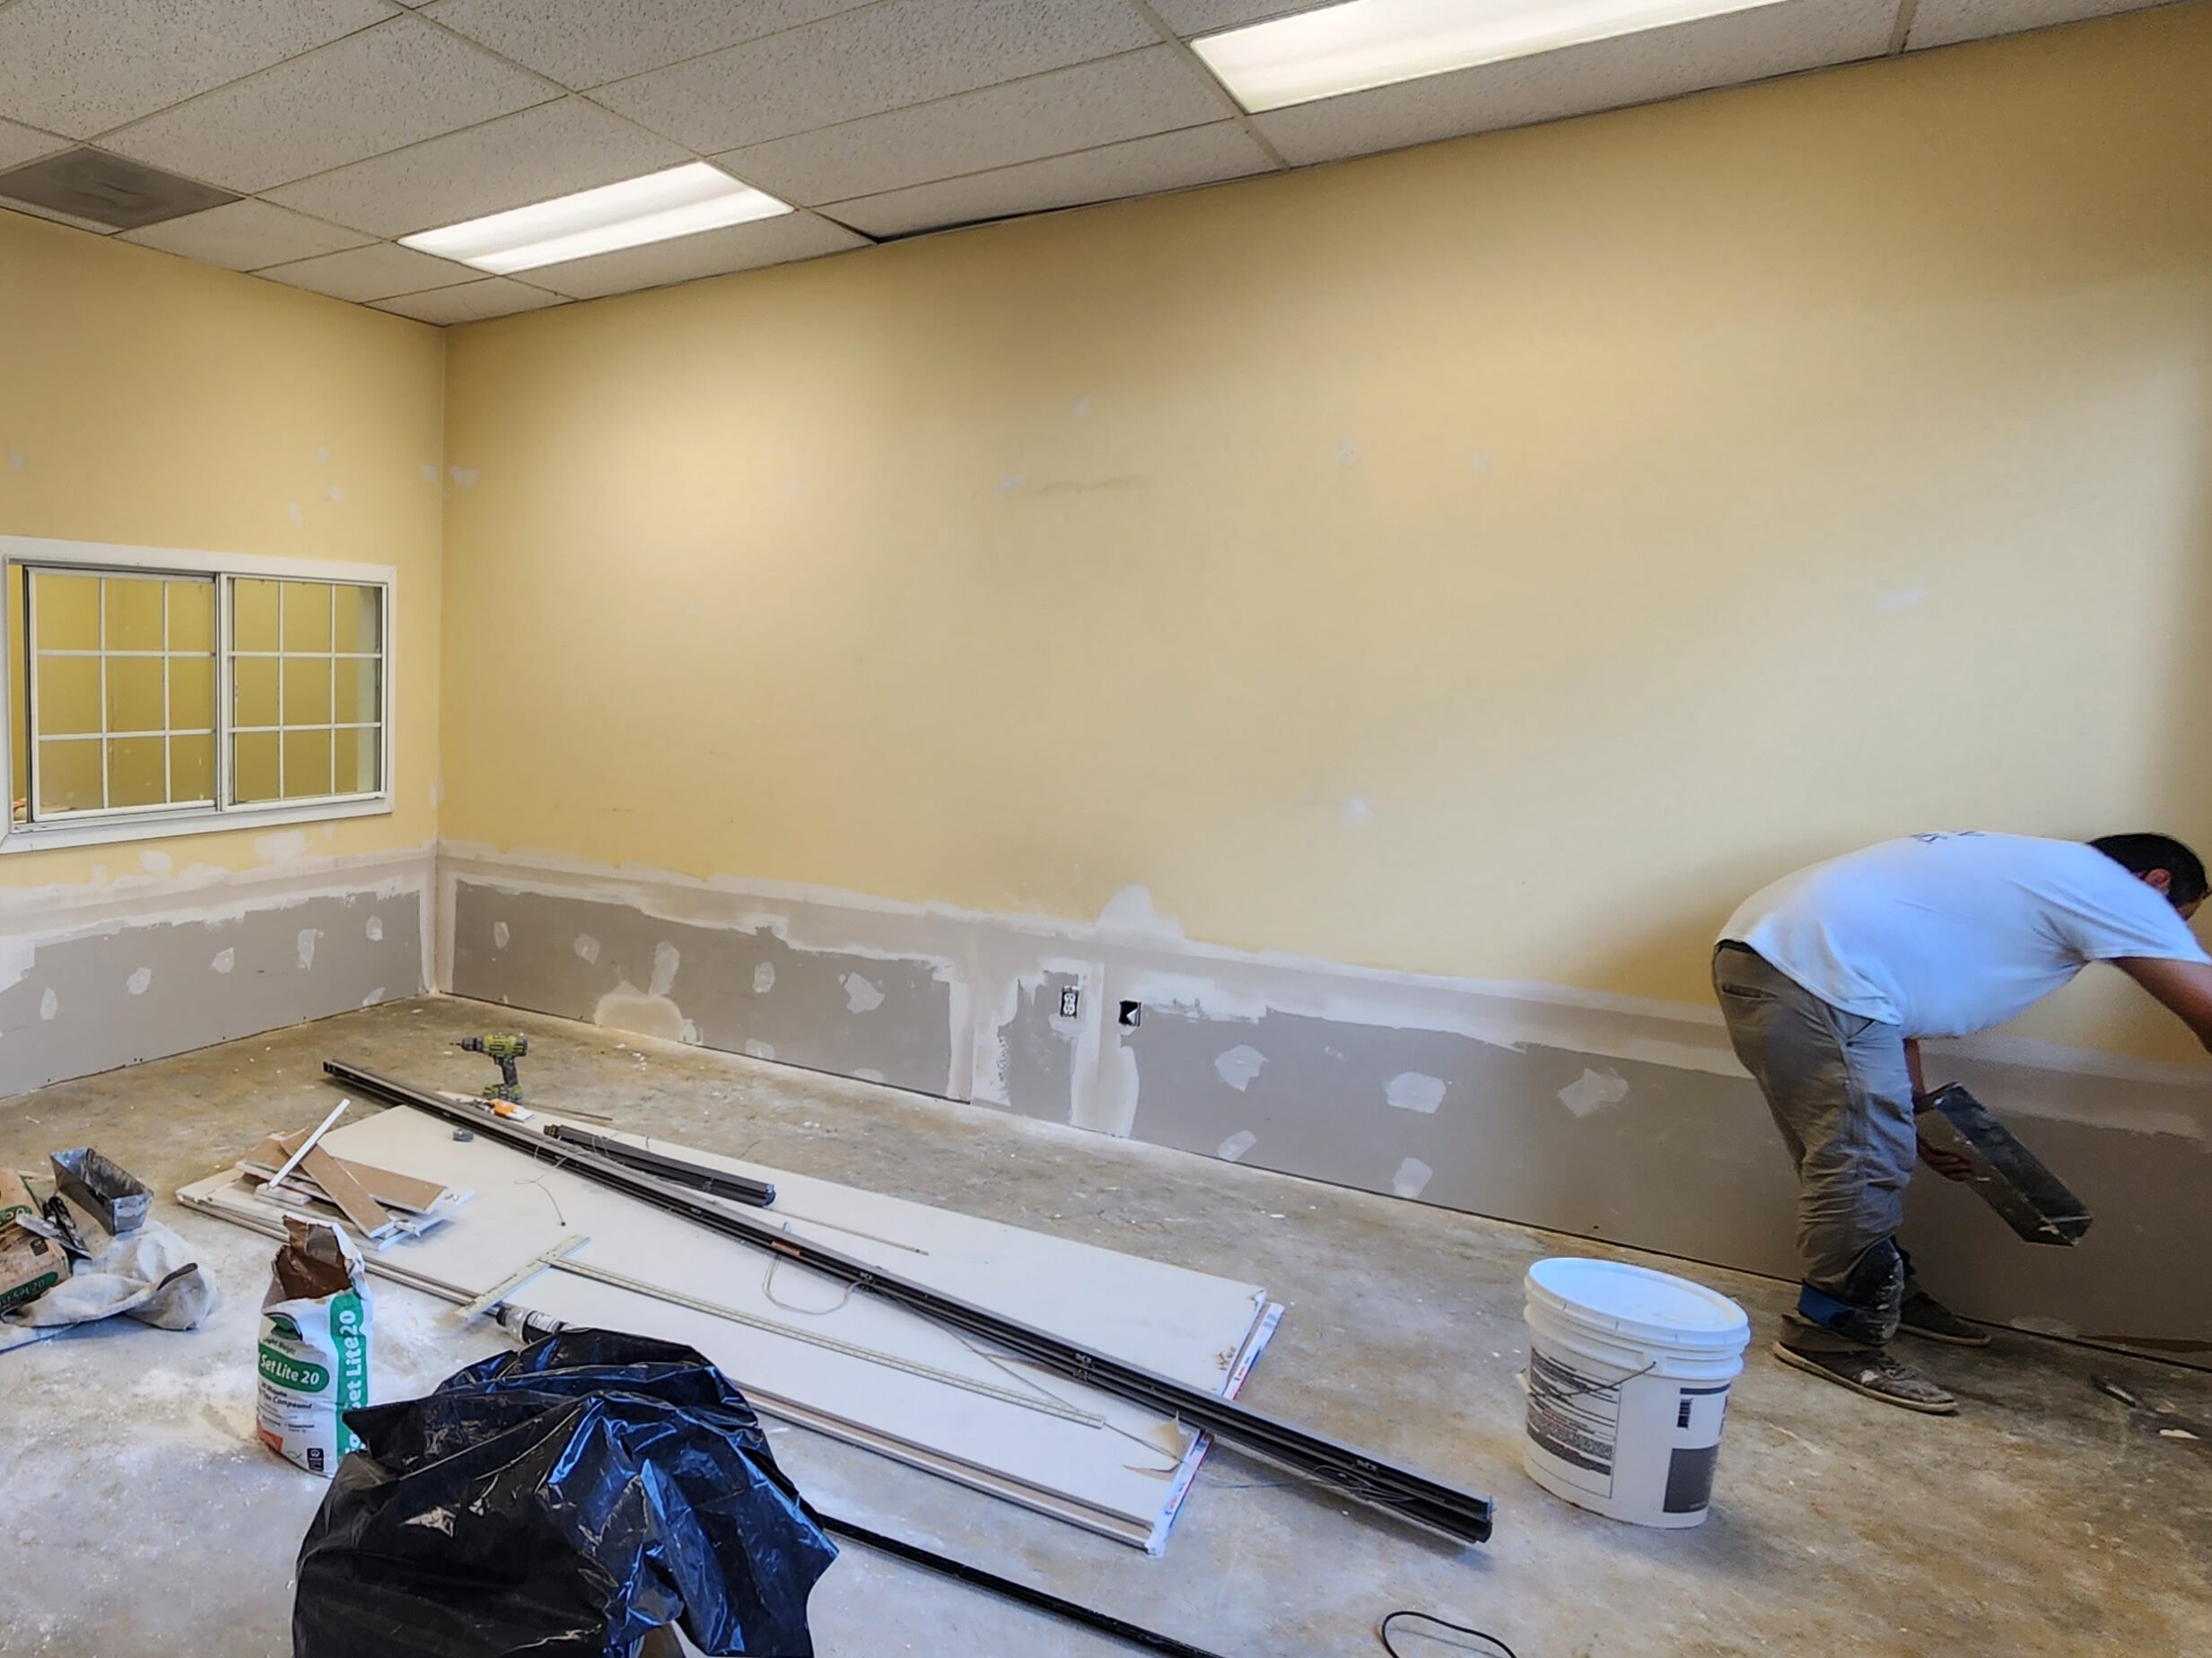 drywall repairs in interior walls